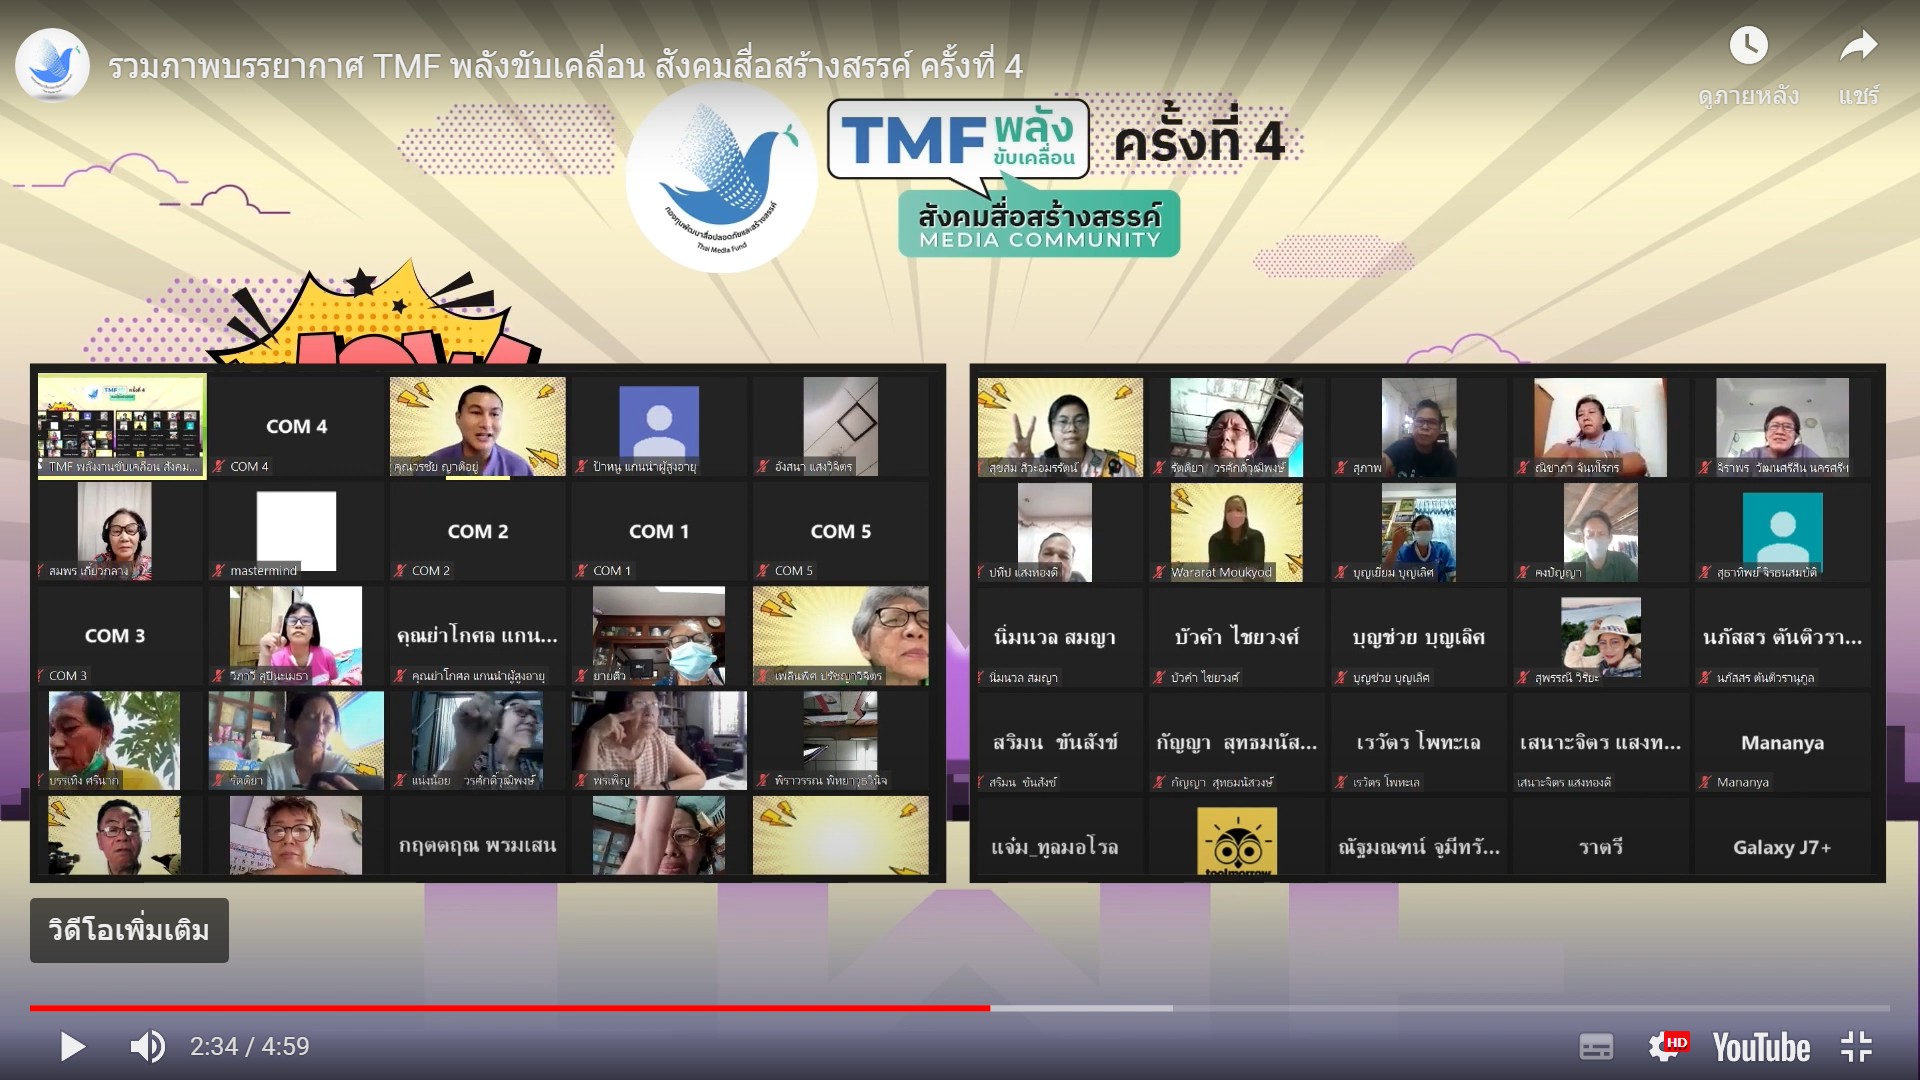 ข่าวกิจกรรม - รวมภาพบรรยากาศ TMF พลังขับเคลื่อน สังคมสื่อสร้างสรรค์ ครั้งที่ 4